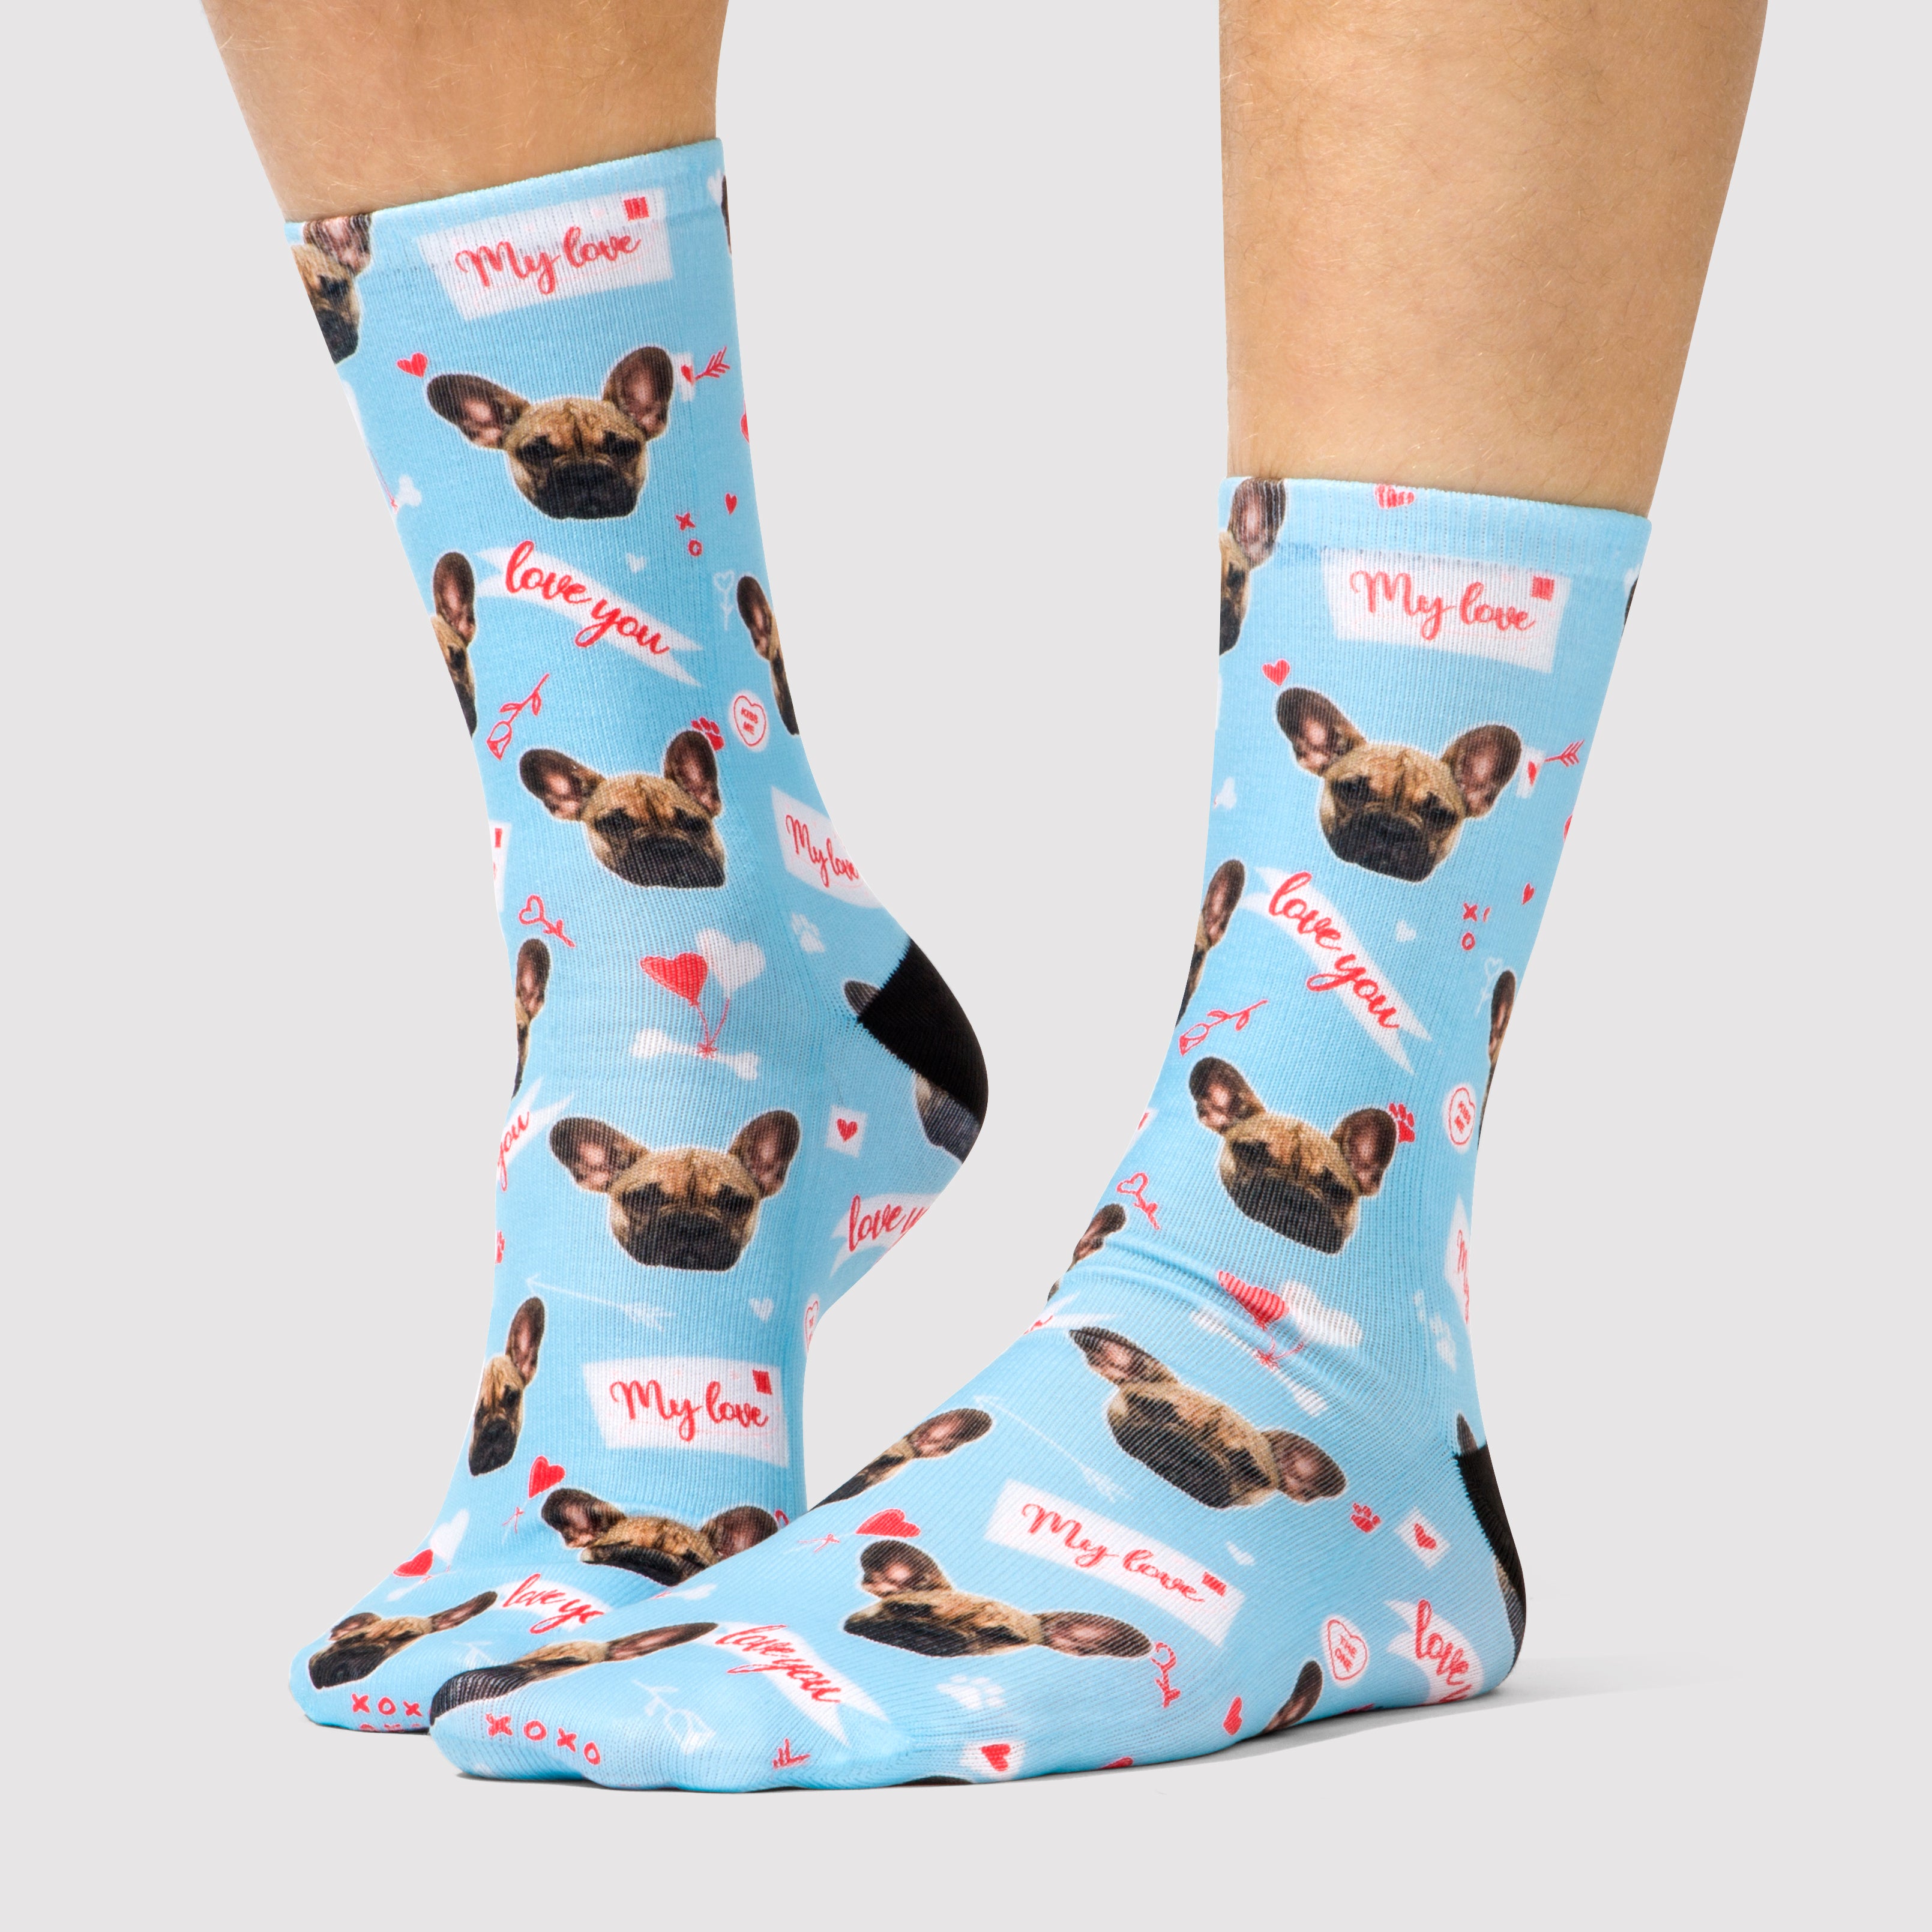 My Love Dogsy Socks